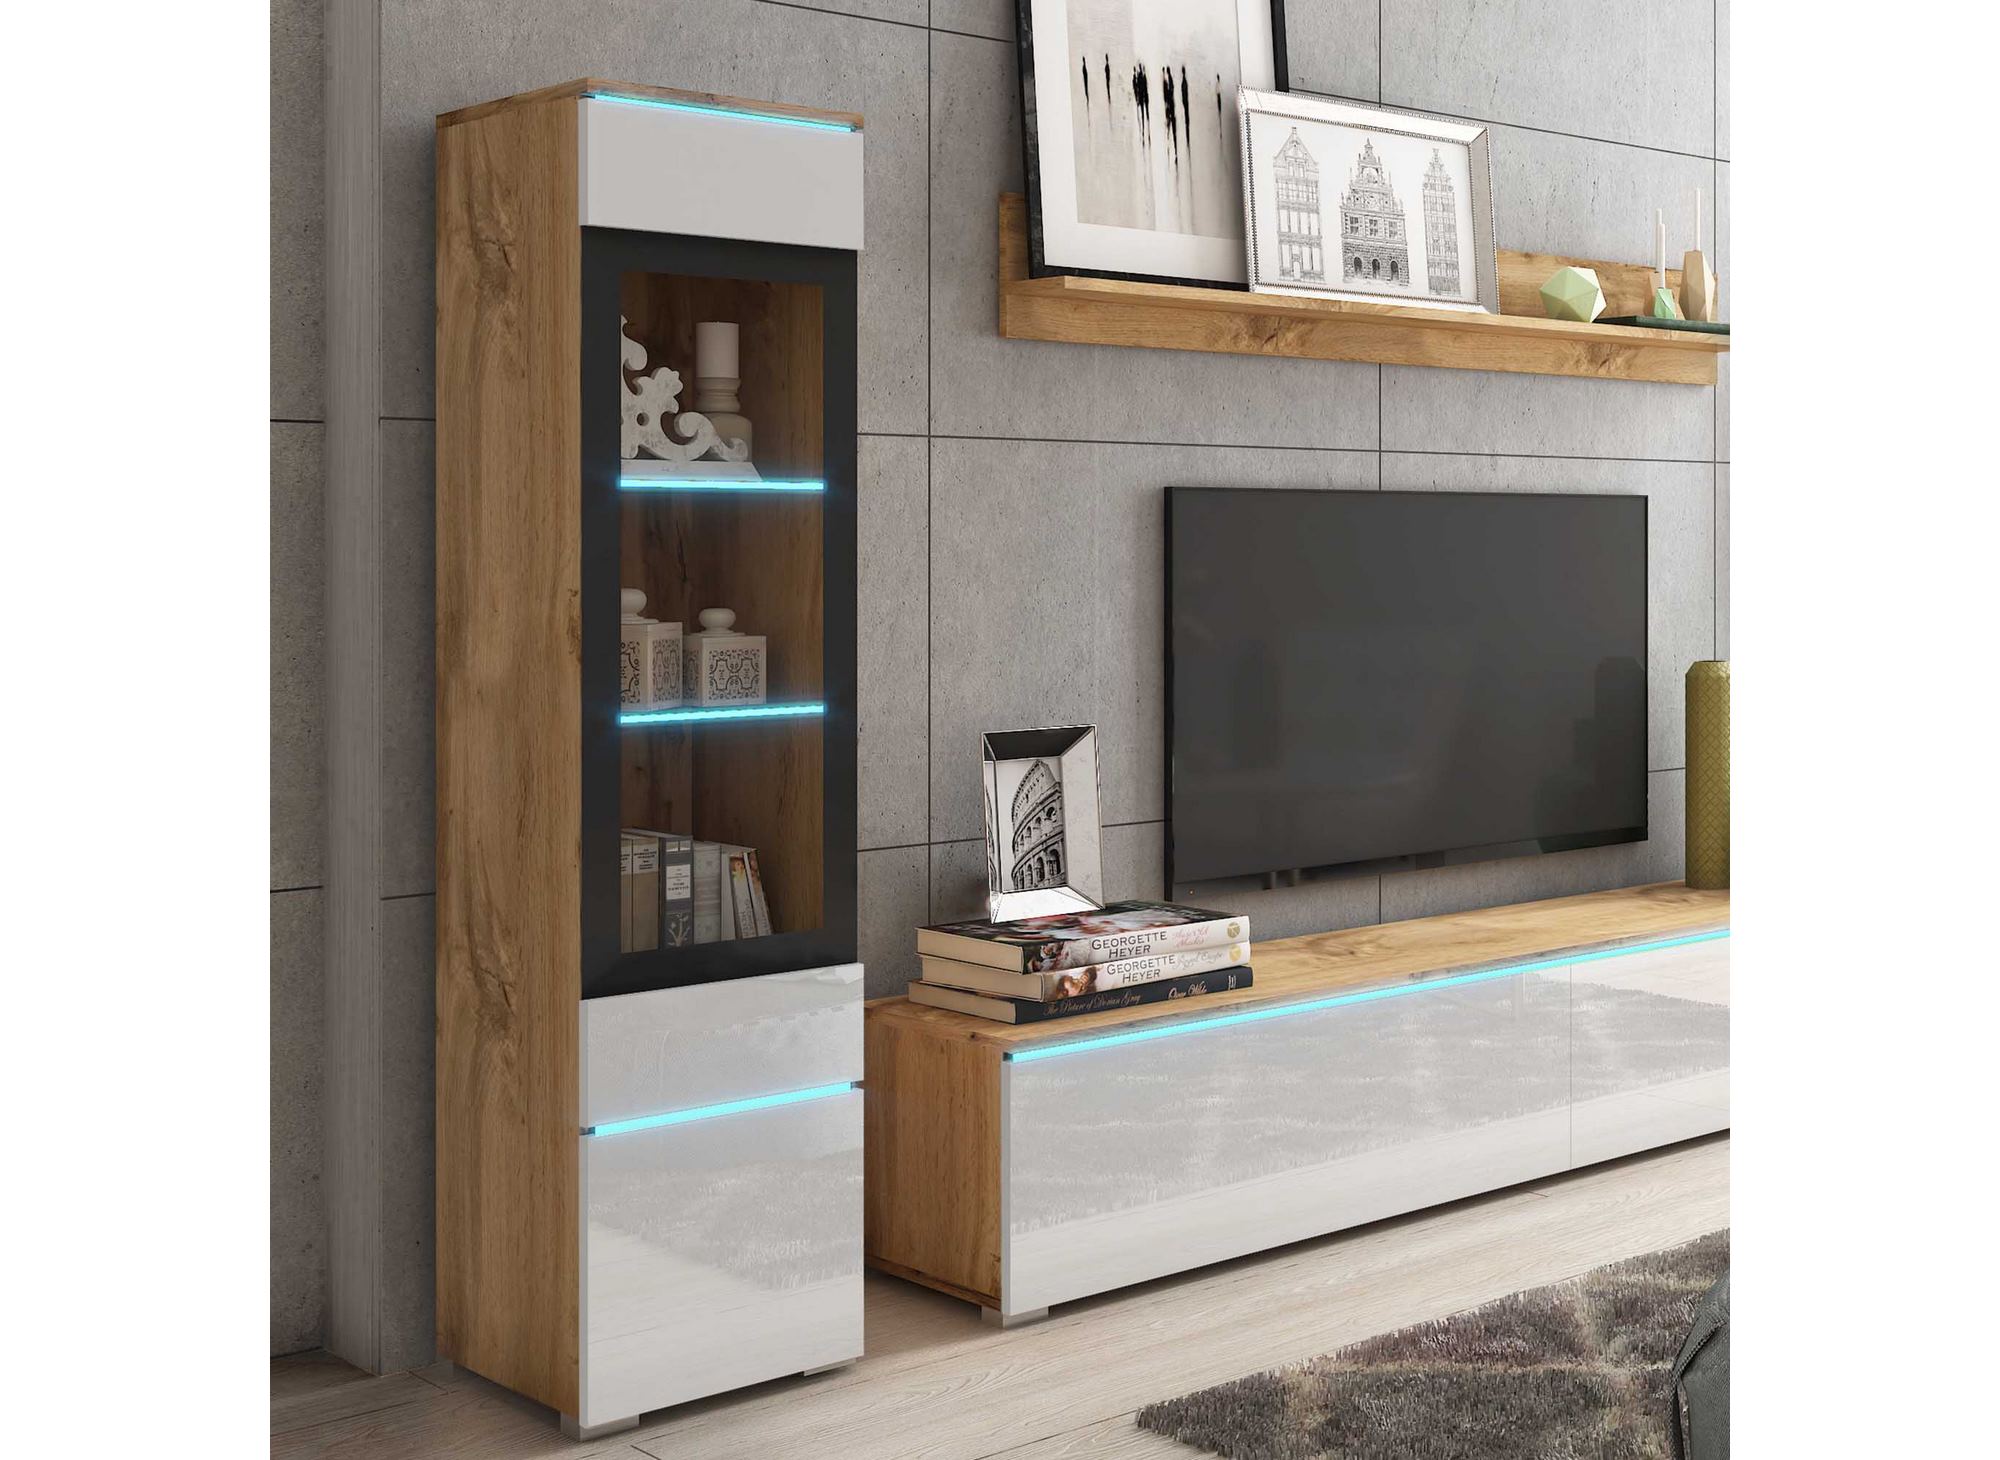 Meuble TV LED Laqué Blanc Design pour salon